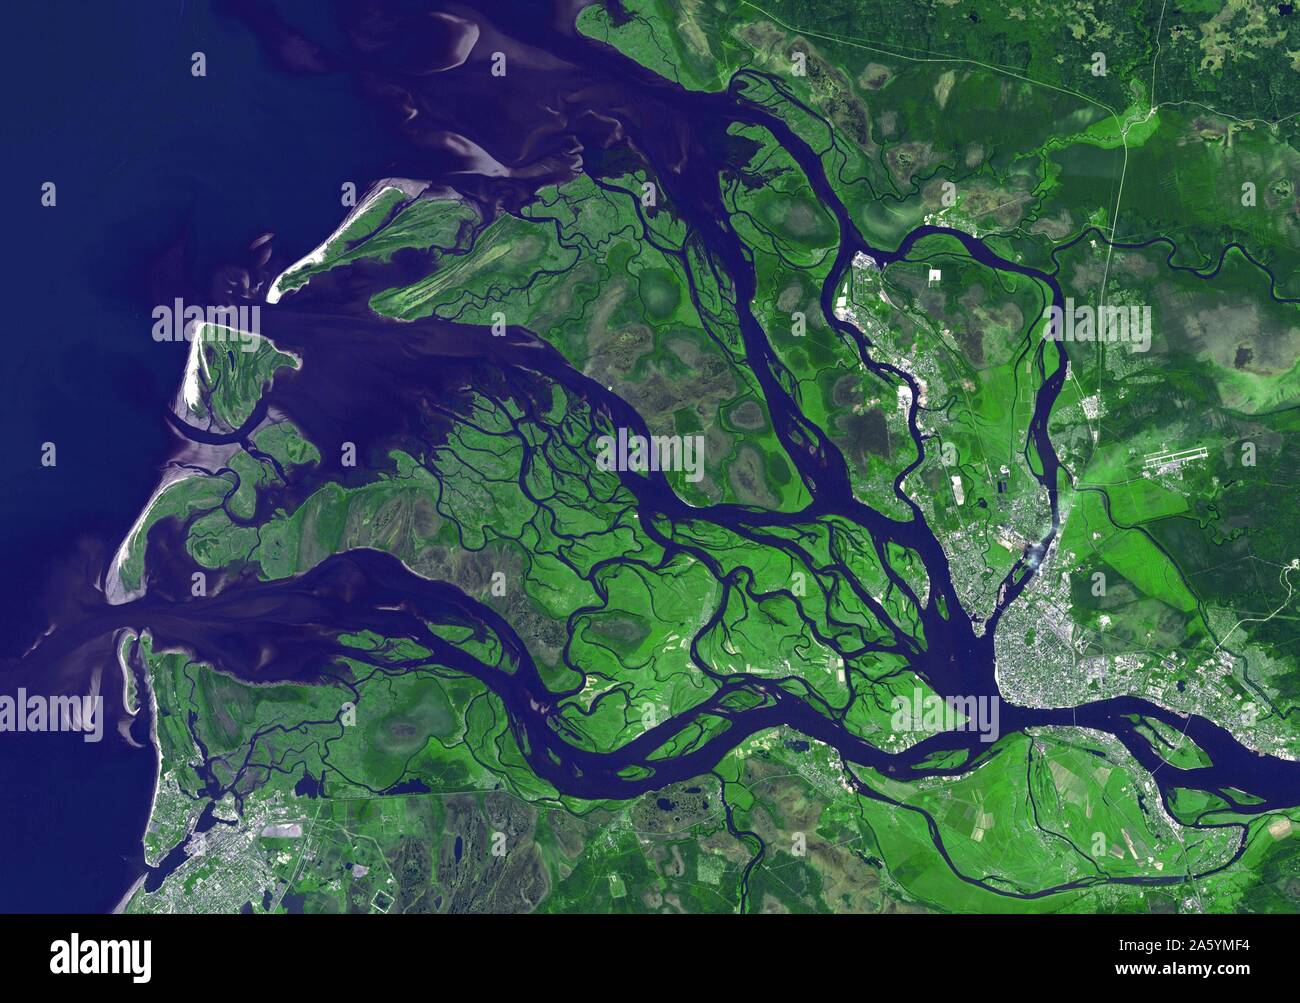 (Ou d'Arkhangelsk Arkhangelsk en anglais) est une ville et la capitale administrative de l'Oblast d'Arkhangelsk, Russie. Il est situé sur les deux rives de la rivière Dvina près de l'endroit où il se jette dans la mer Blanche. Le 14 juillet 2010. Image satellite. Banque D'Images